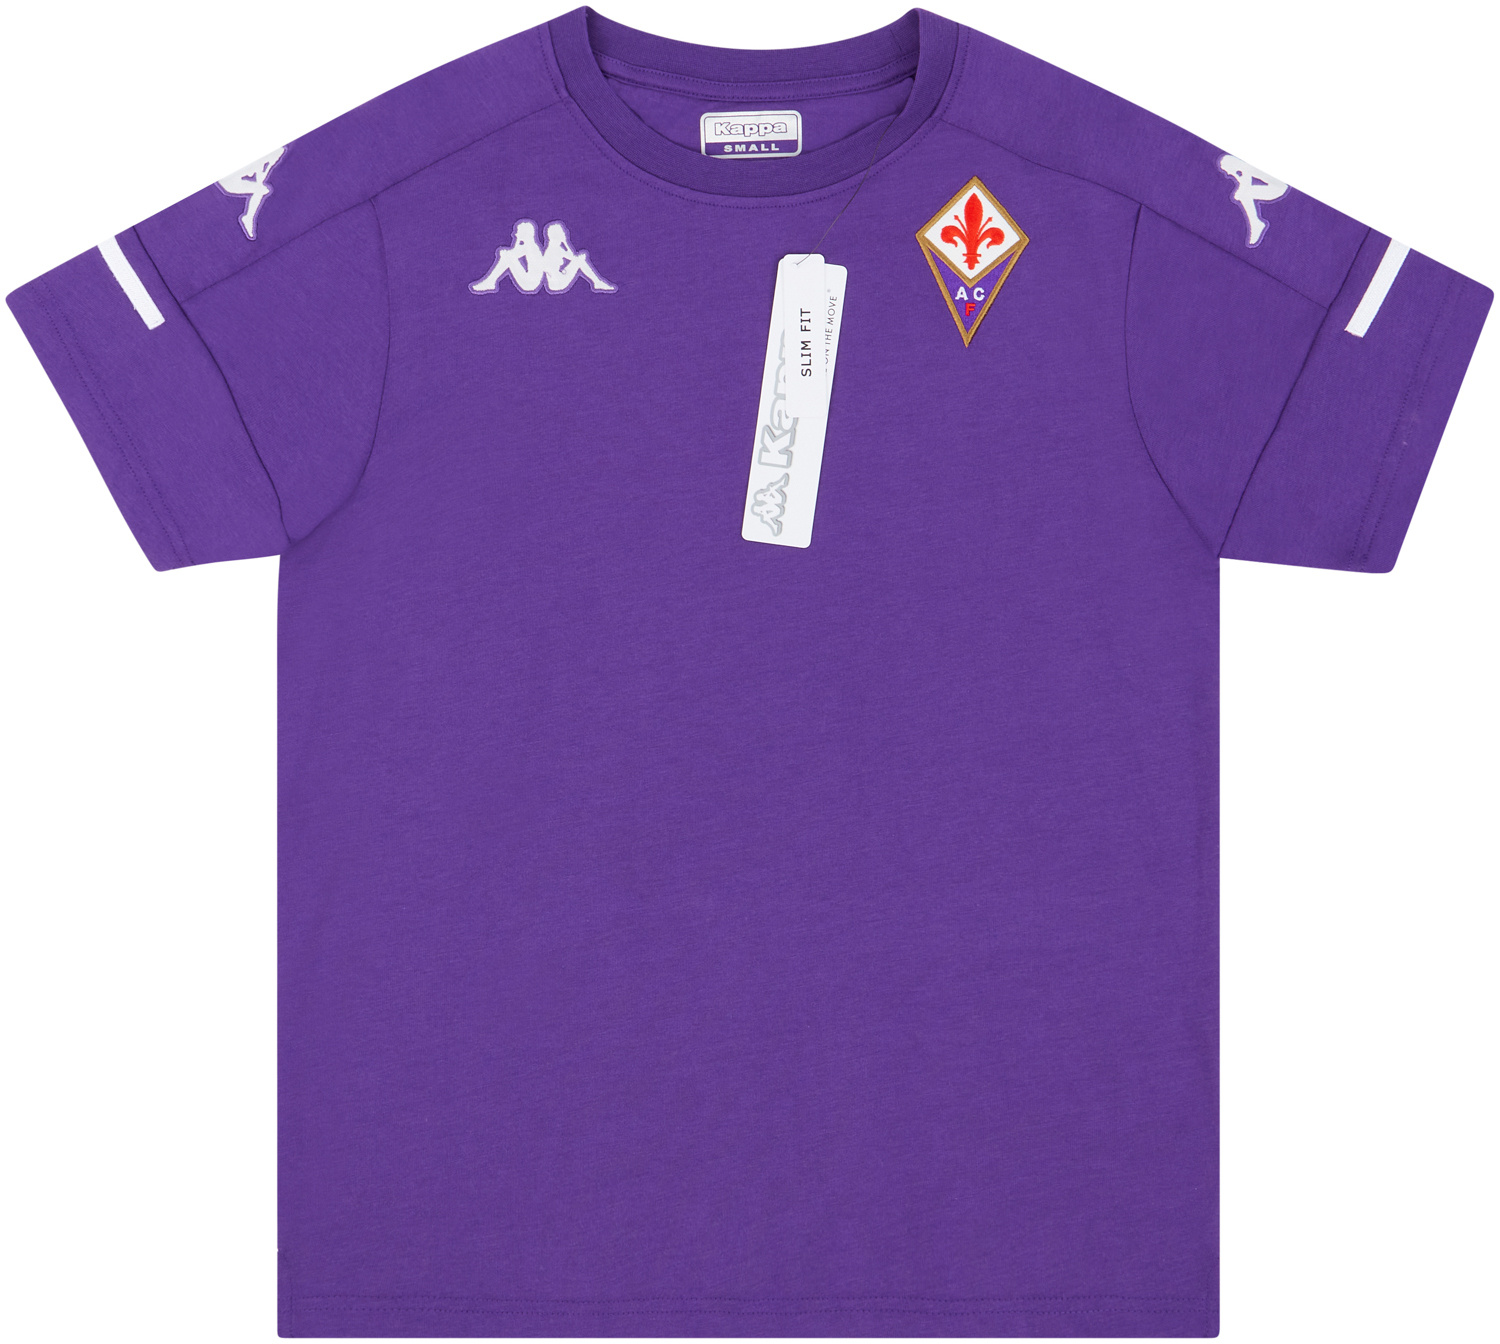 2020-21 Fiorentina Kappa Training Tee - NEW - (S)